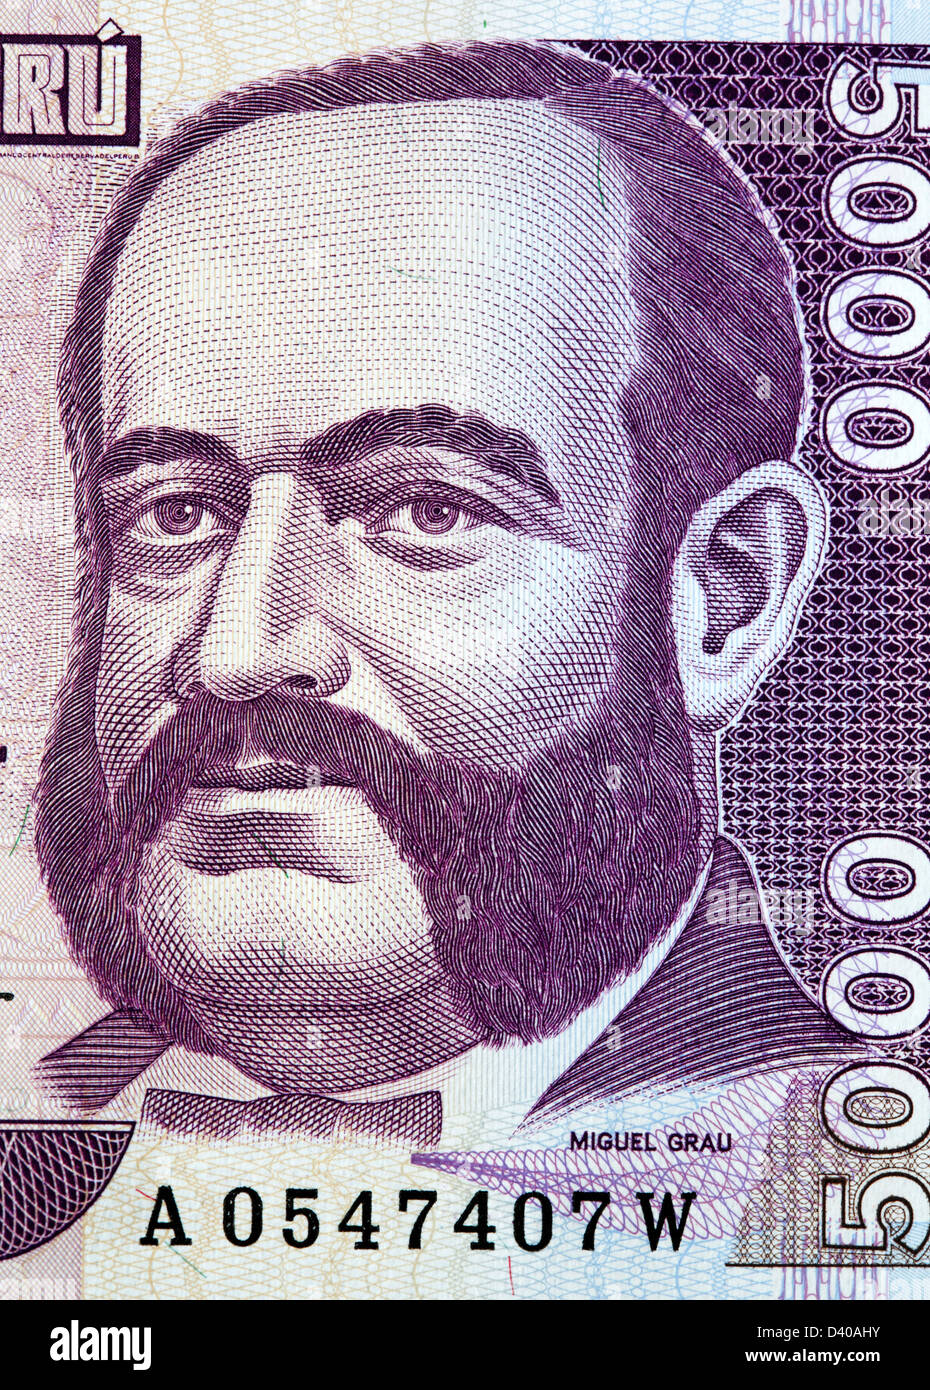 Retrato del Almirante Miguel Grau desde 5000 billetes Intis, Perú, 1988 Foto de stock